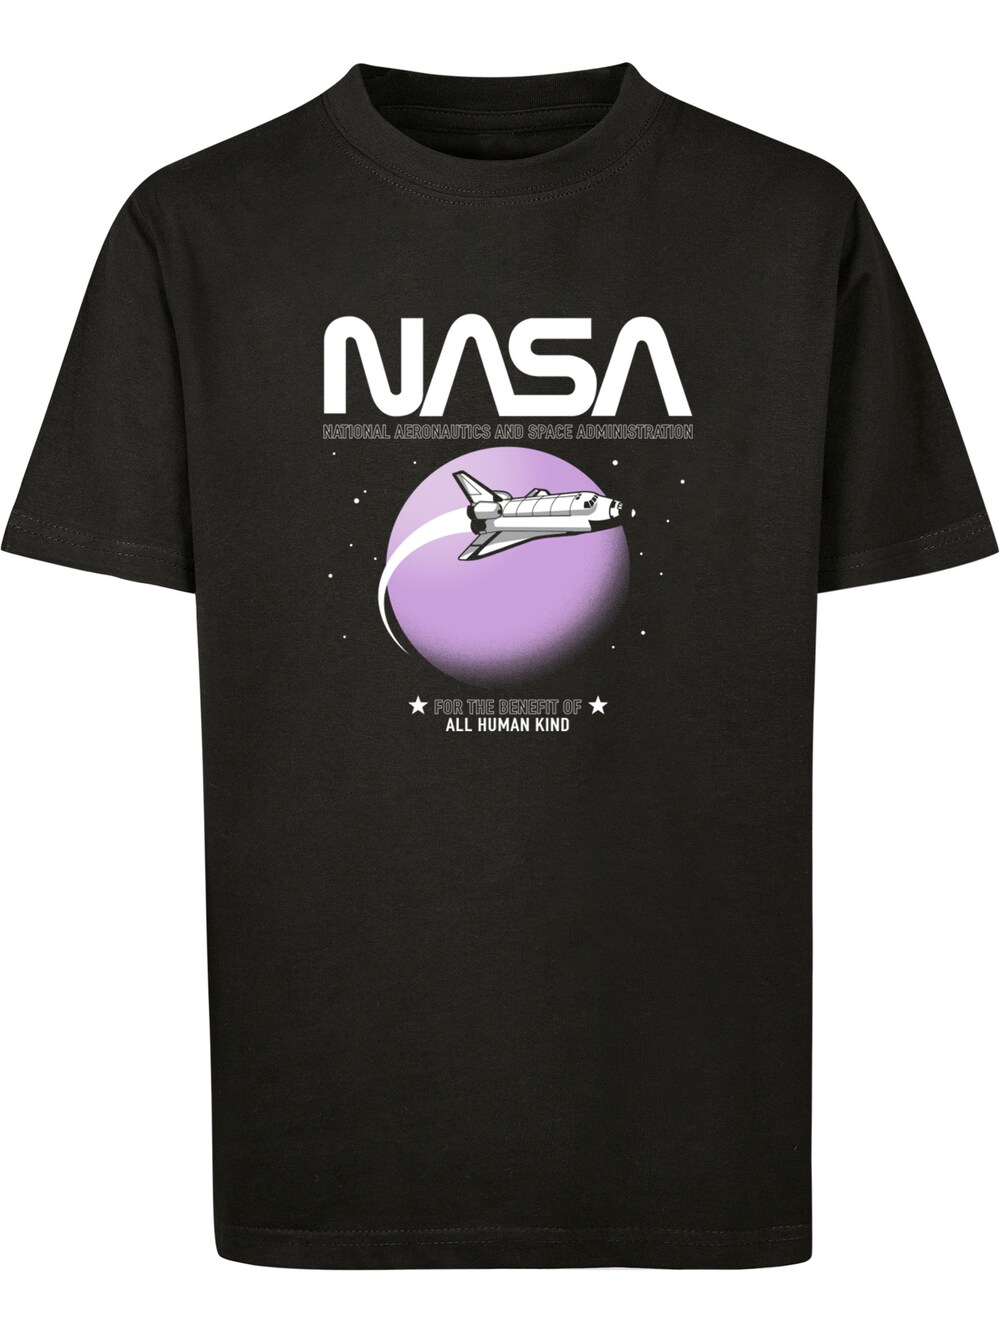 Рубашка F4Nt4Stic NASA Shuttle Orbit, черный цена и фото